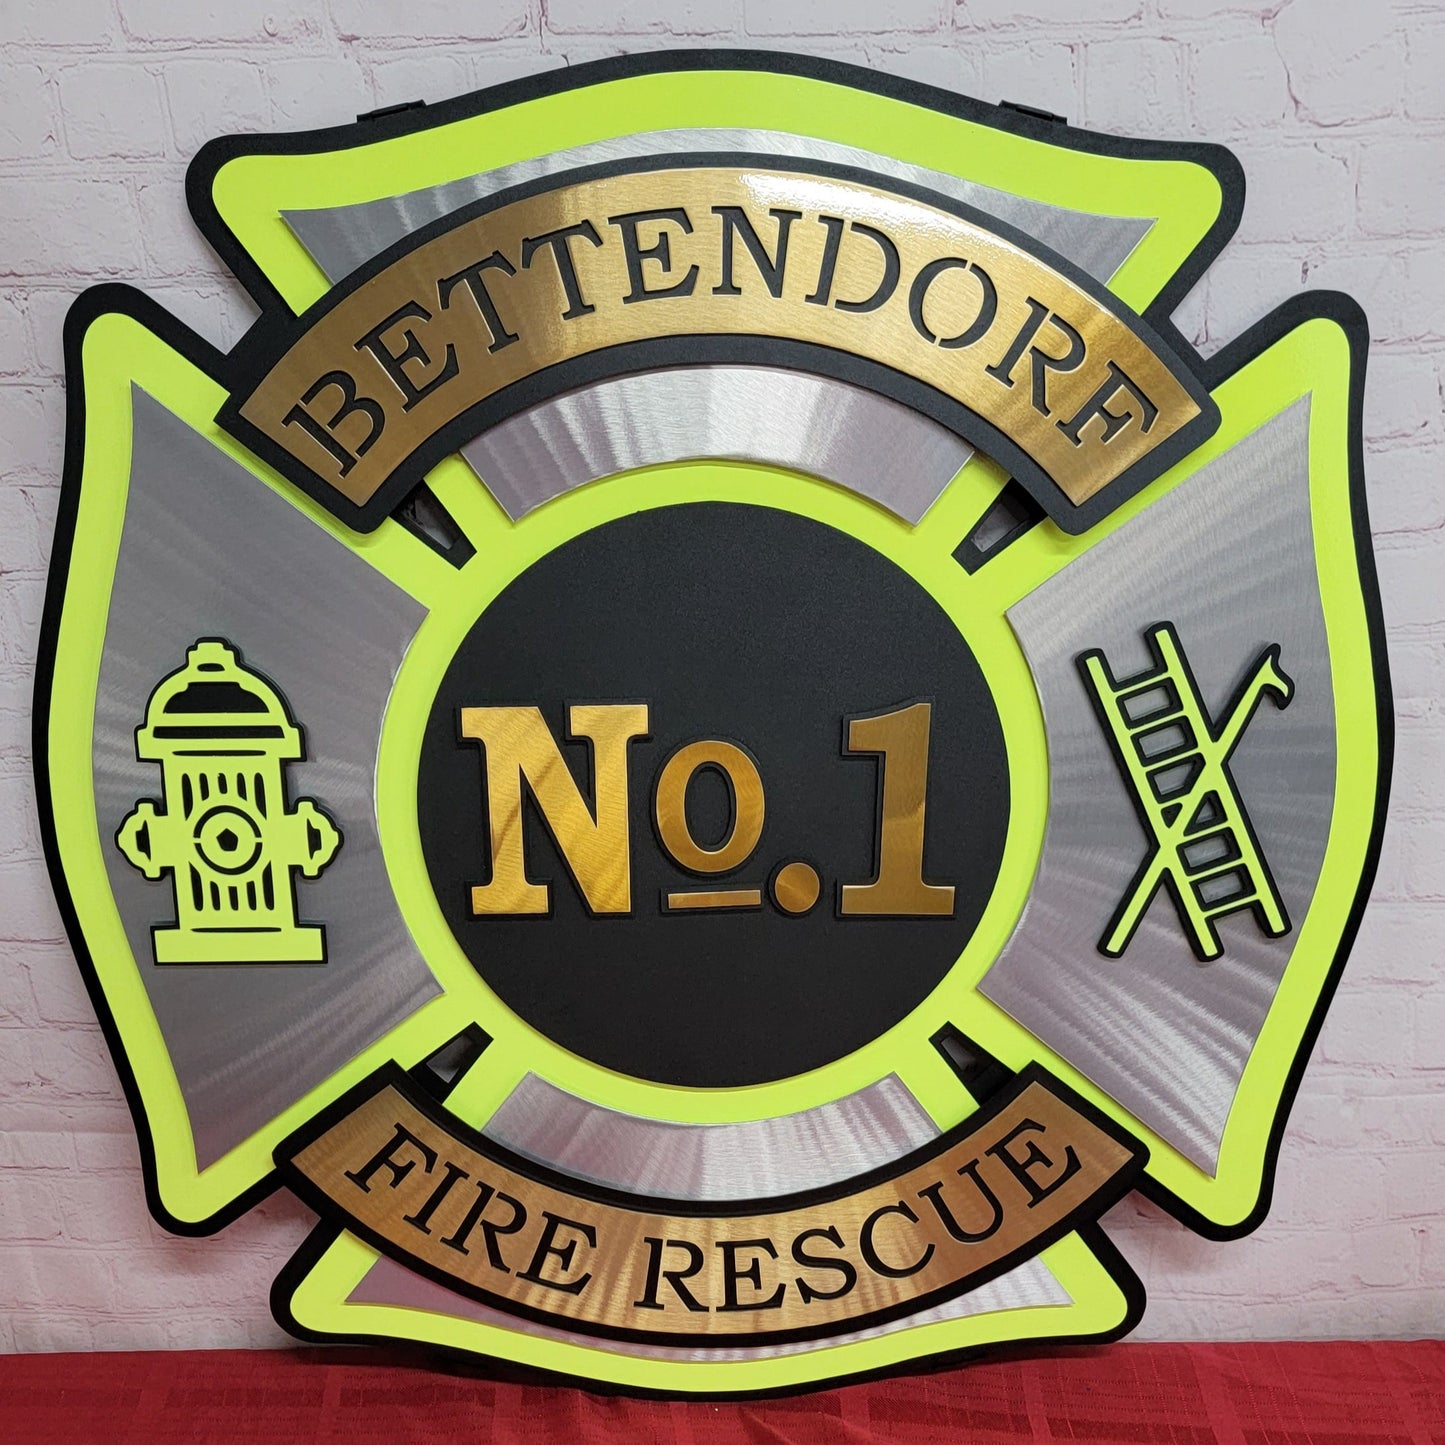 Bettendorf Fire Rescue No. 2